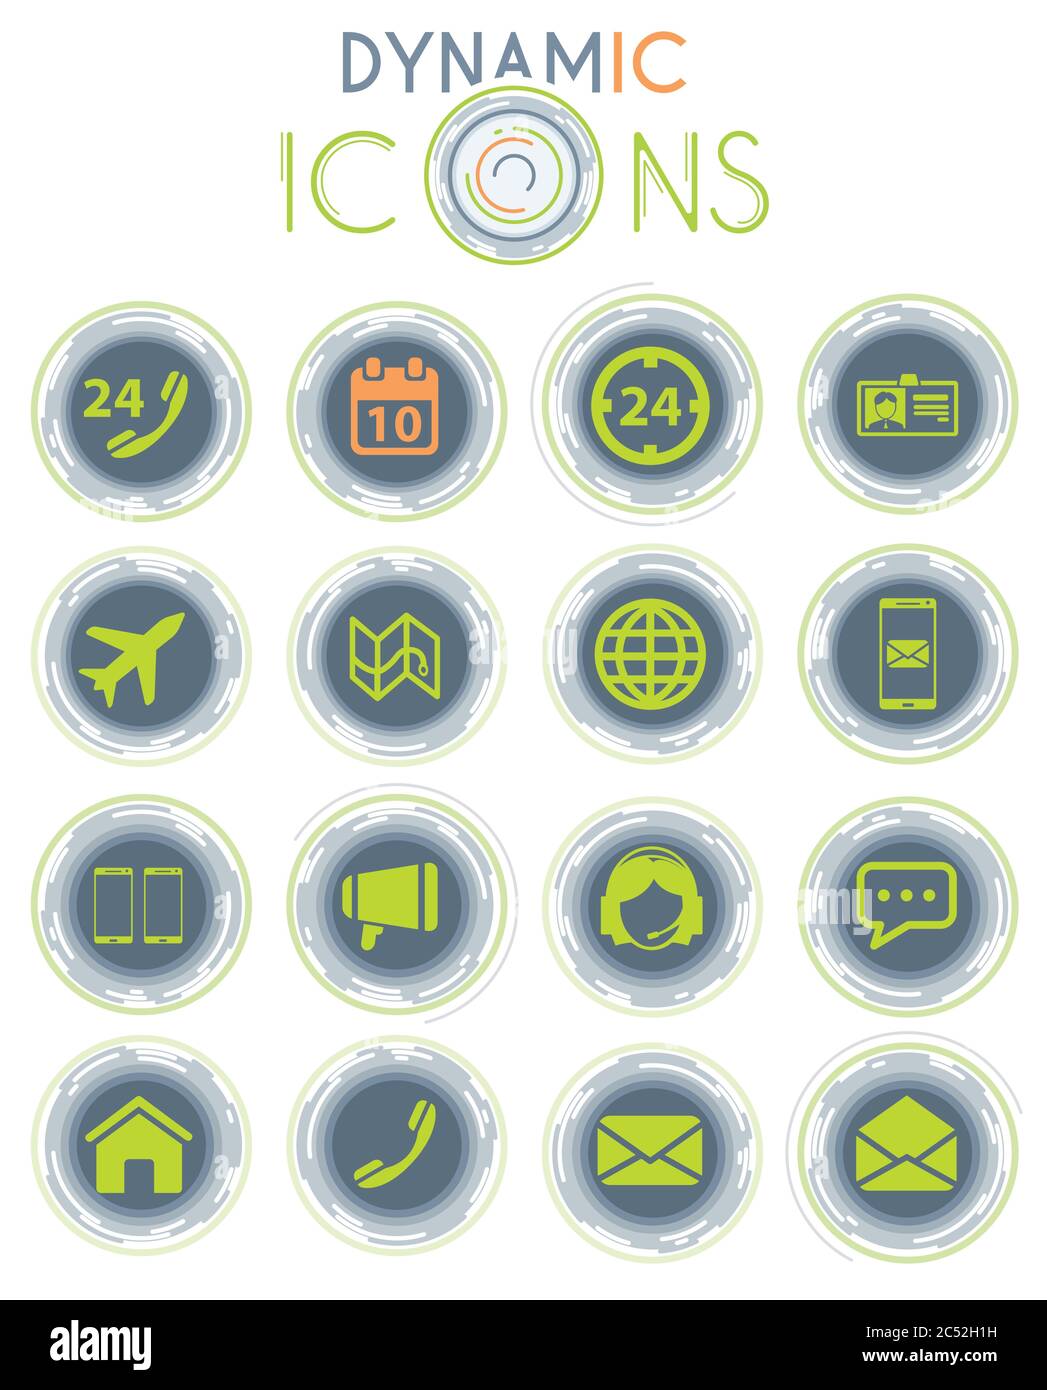 Iconos dinámicos de contactos Ilustración del Vector